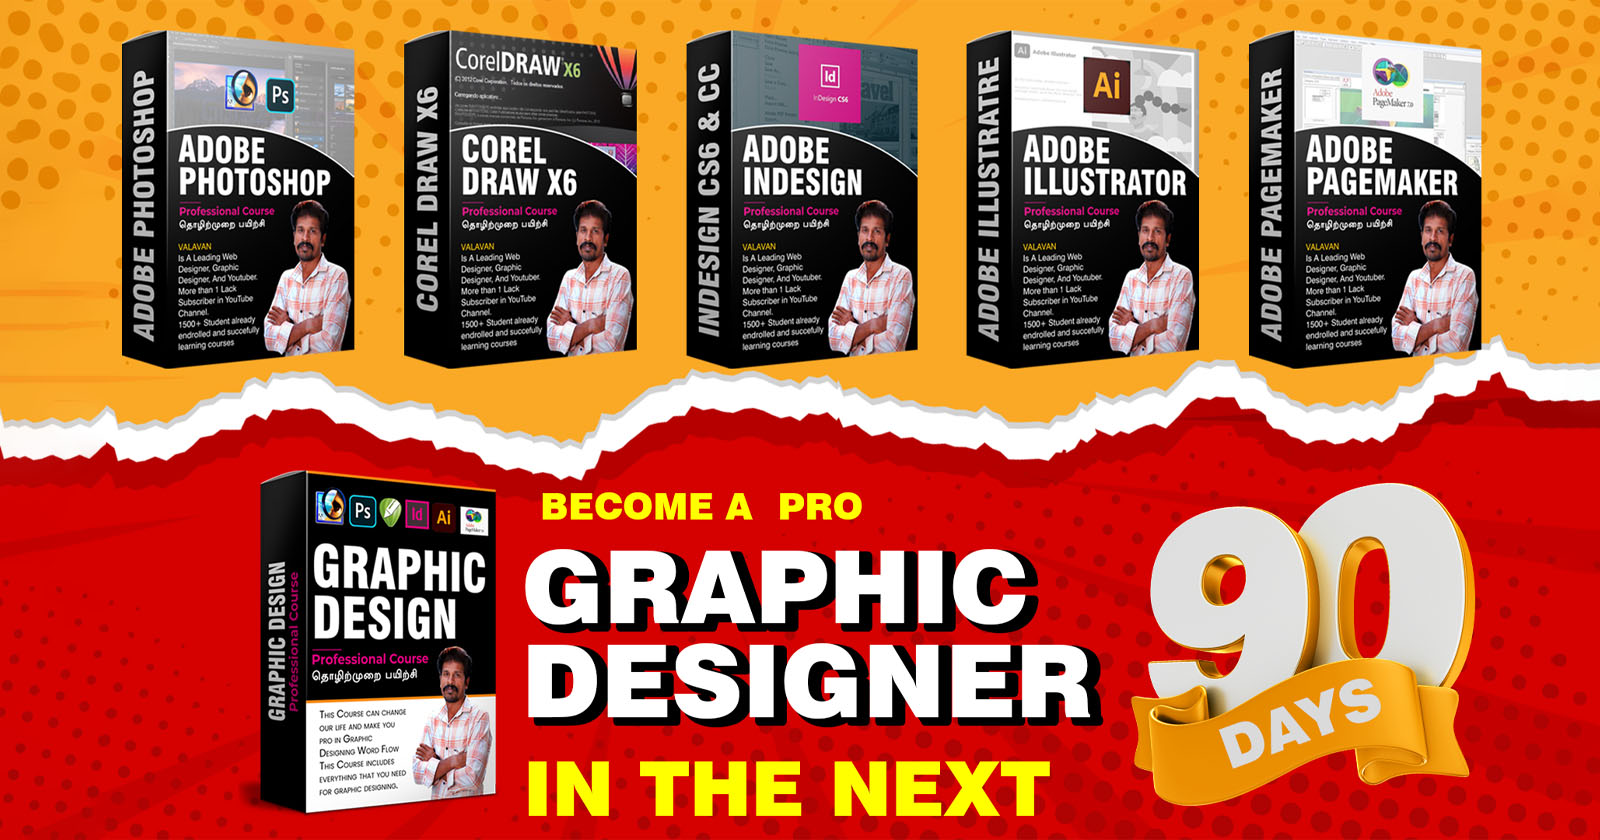 Graphic design 90 days - c